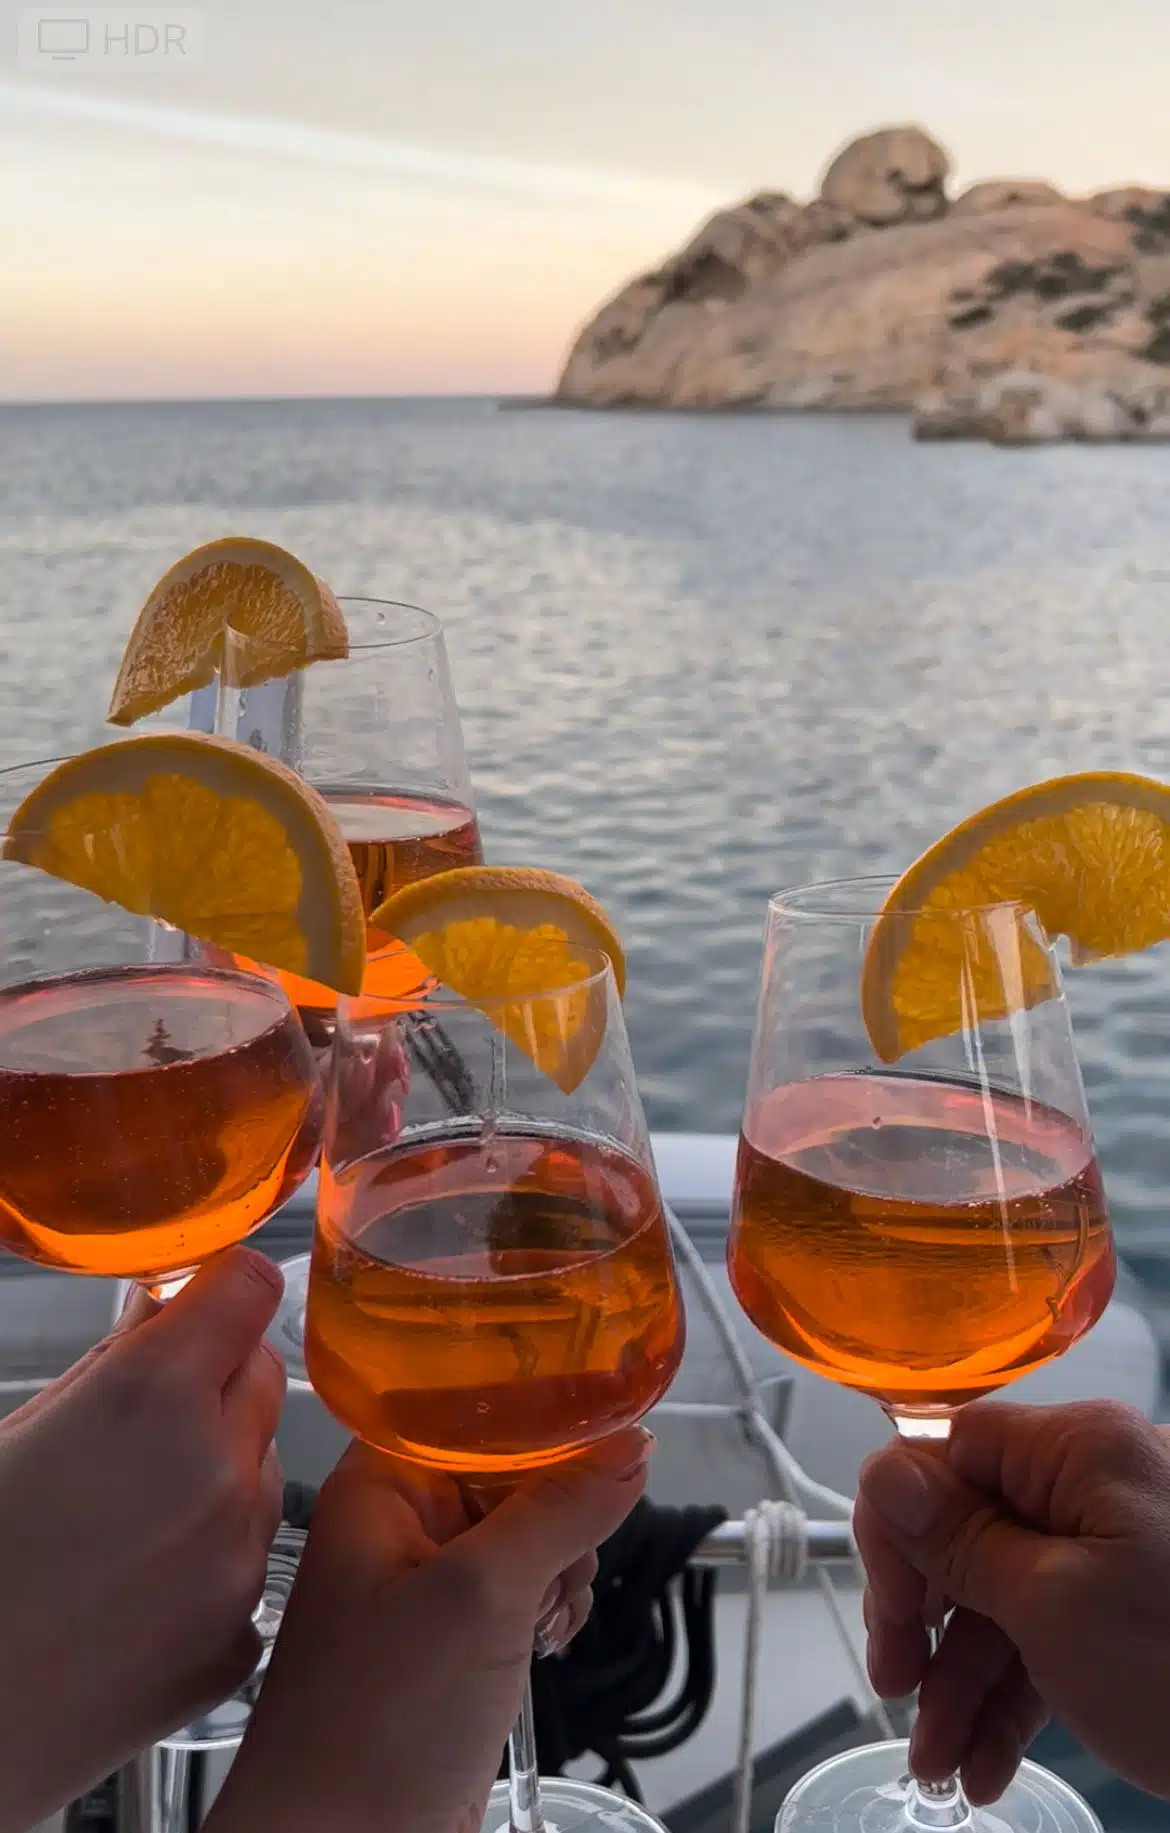 Vier Hände heben Gläser mit einem Orangengetränk, garniert mit Orangenscheiben, vor einem malerischen Blick auf ruhiges Wasser und felsige Klippen bei Sonnenuntergang. Die festliche Stimmung lässt auf eine Feier in Küstennähe schließen, vielleicht nach einem aufregenden Segeltörn auf einer luxuriösen Segelyacht.